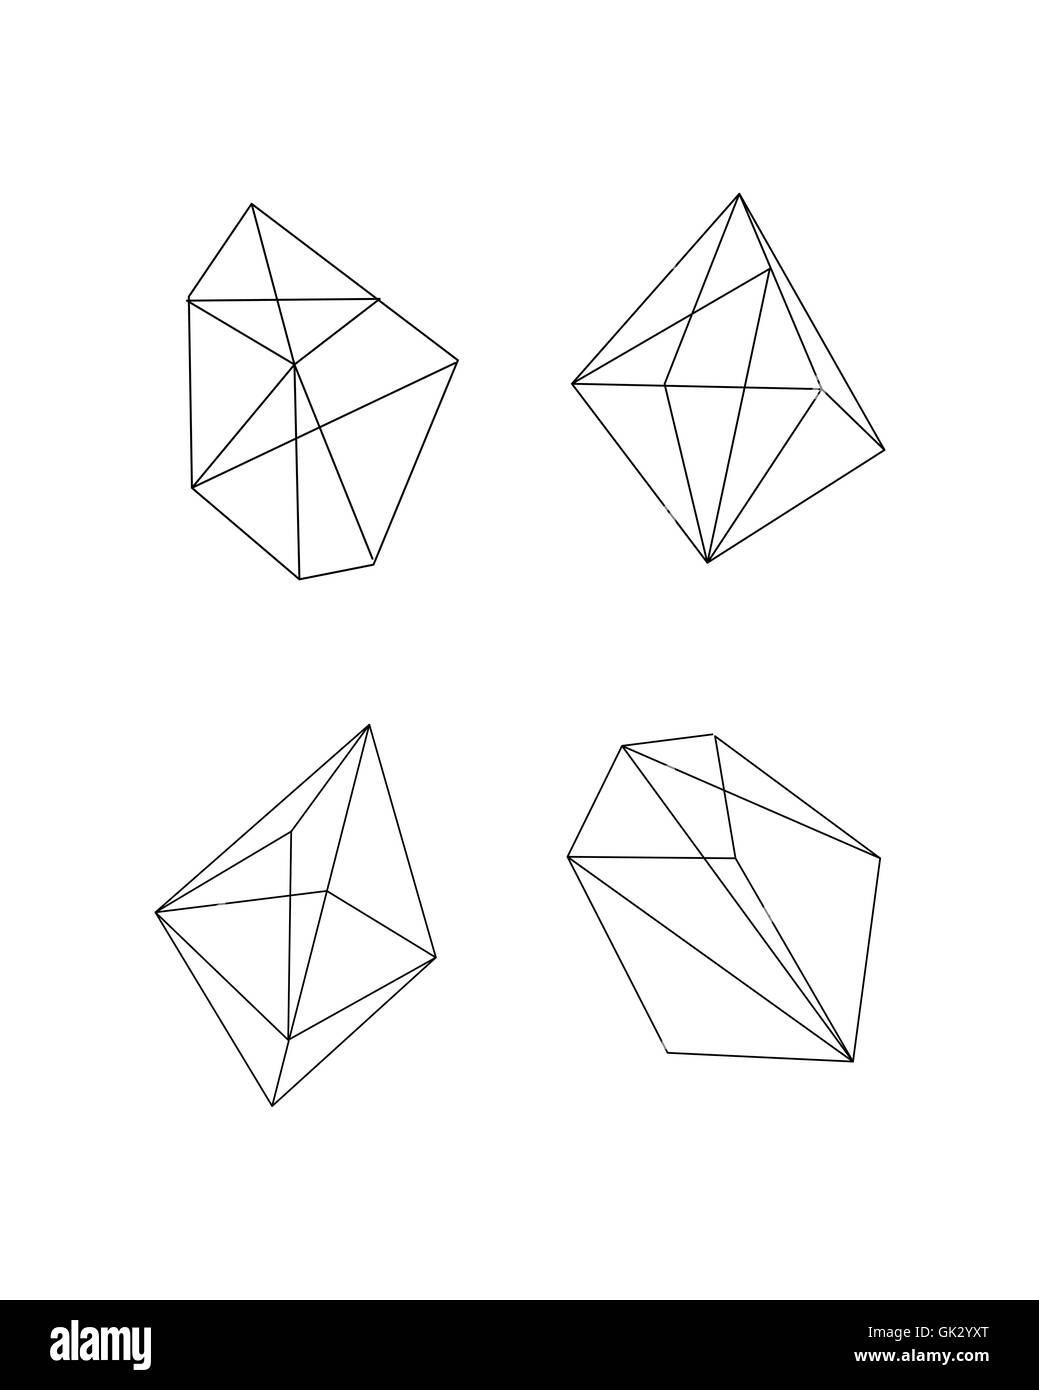 Vektor-Illustration oder eine Zeichnung der verschiedenen polygonalen geometrische abstrakte Formen Stockfoto